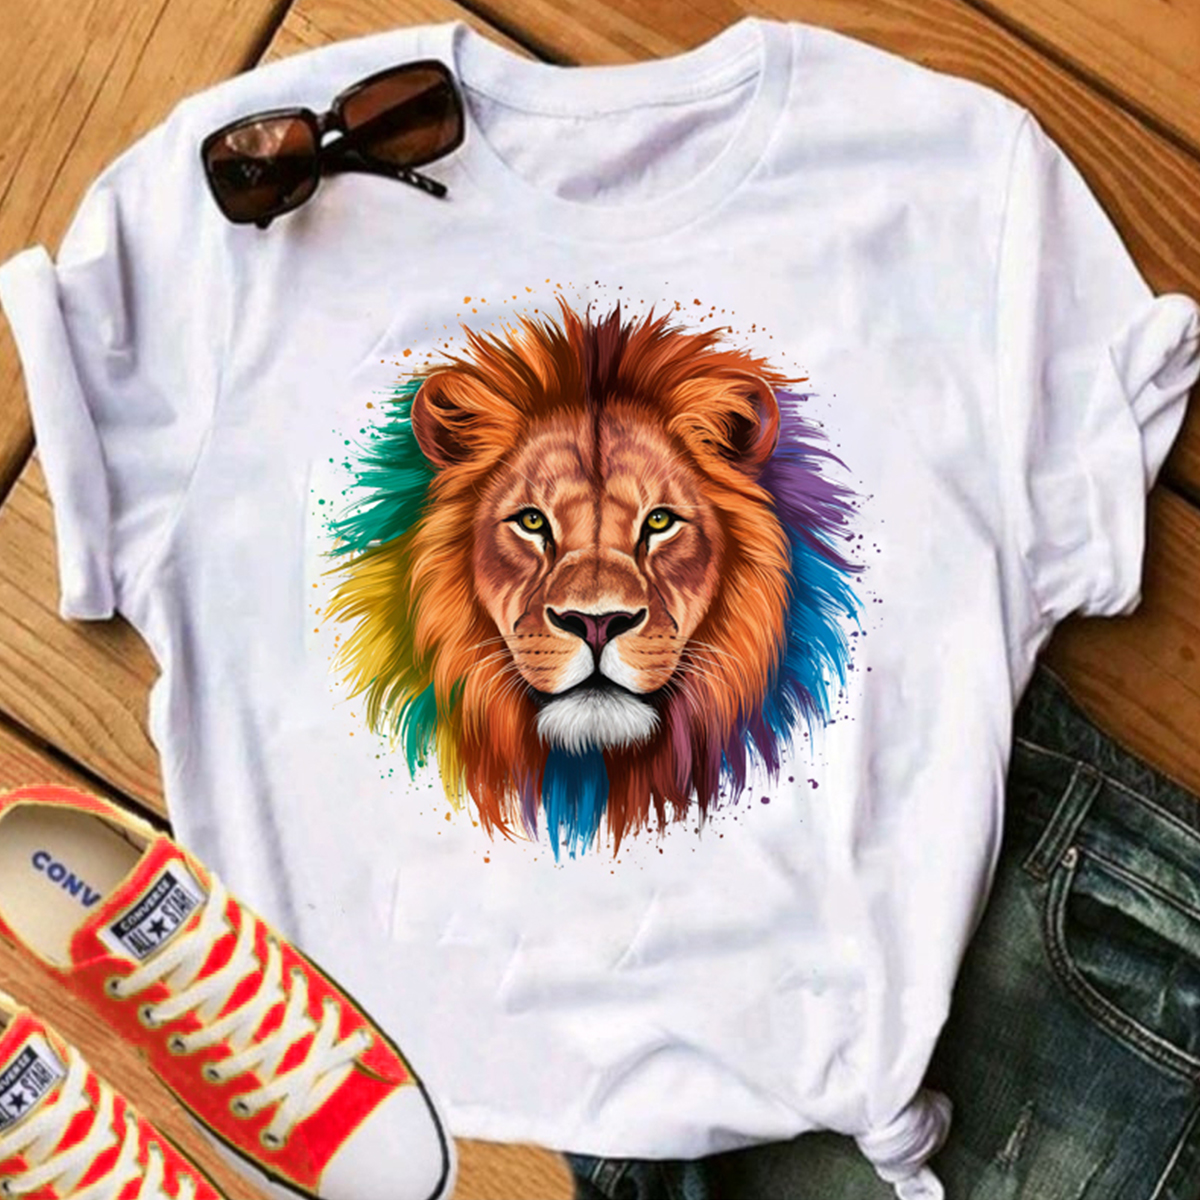 Camiseta Cristã T-shirt Blusa Leão de Judá Moda Gospel Evangélica